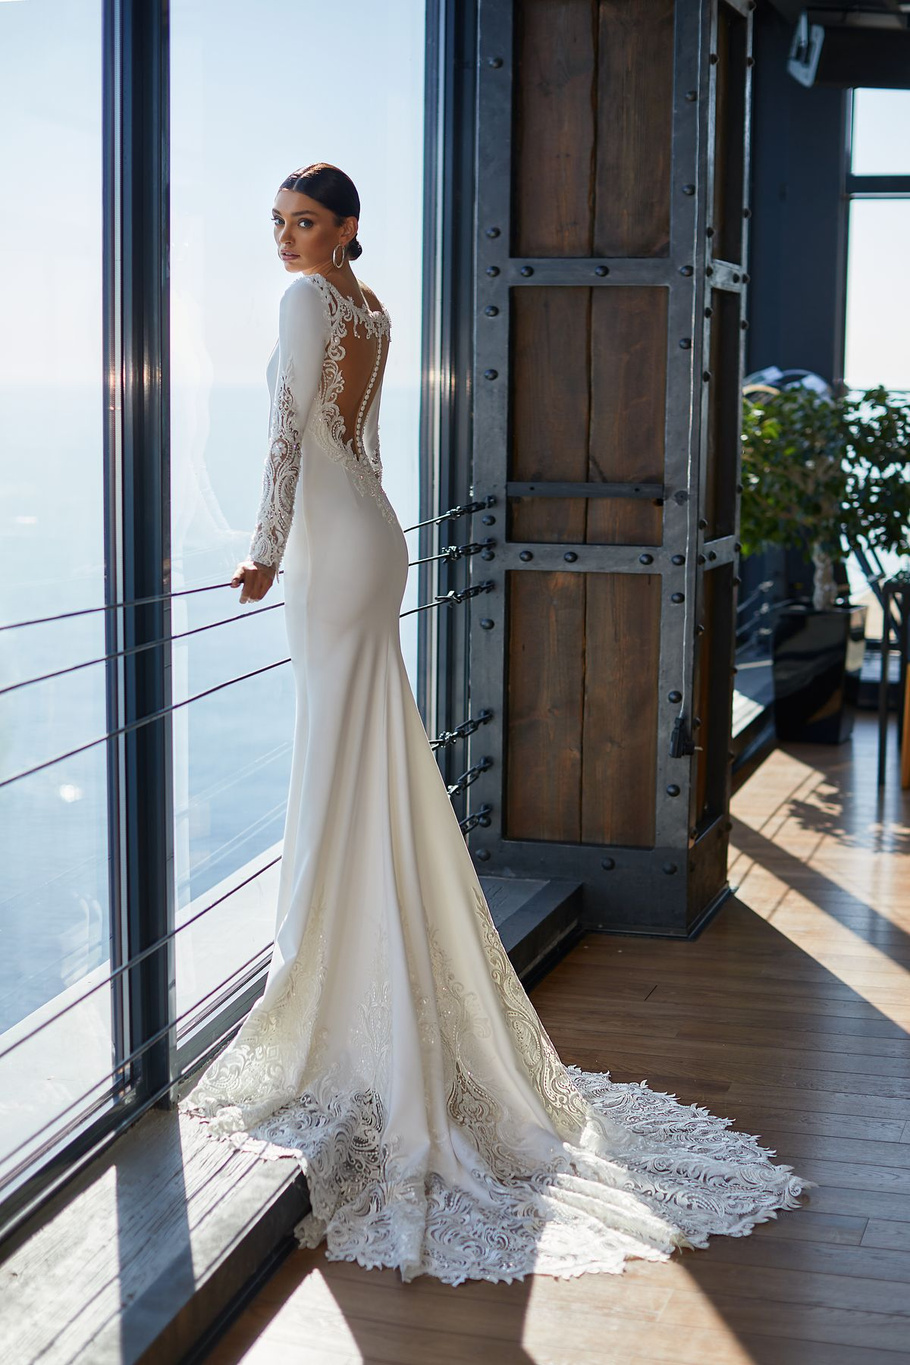 Купить свадебное платье «Перфект Чойс» Ида Торез из коллекции 2021 года в салоне «Мэри Трюфель»